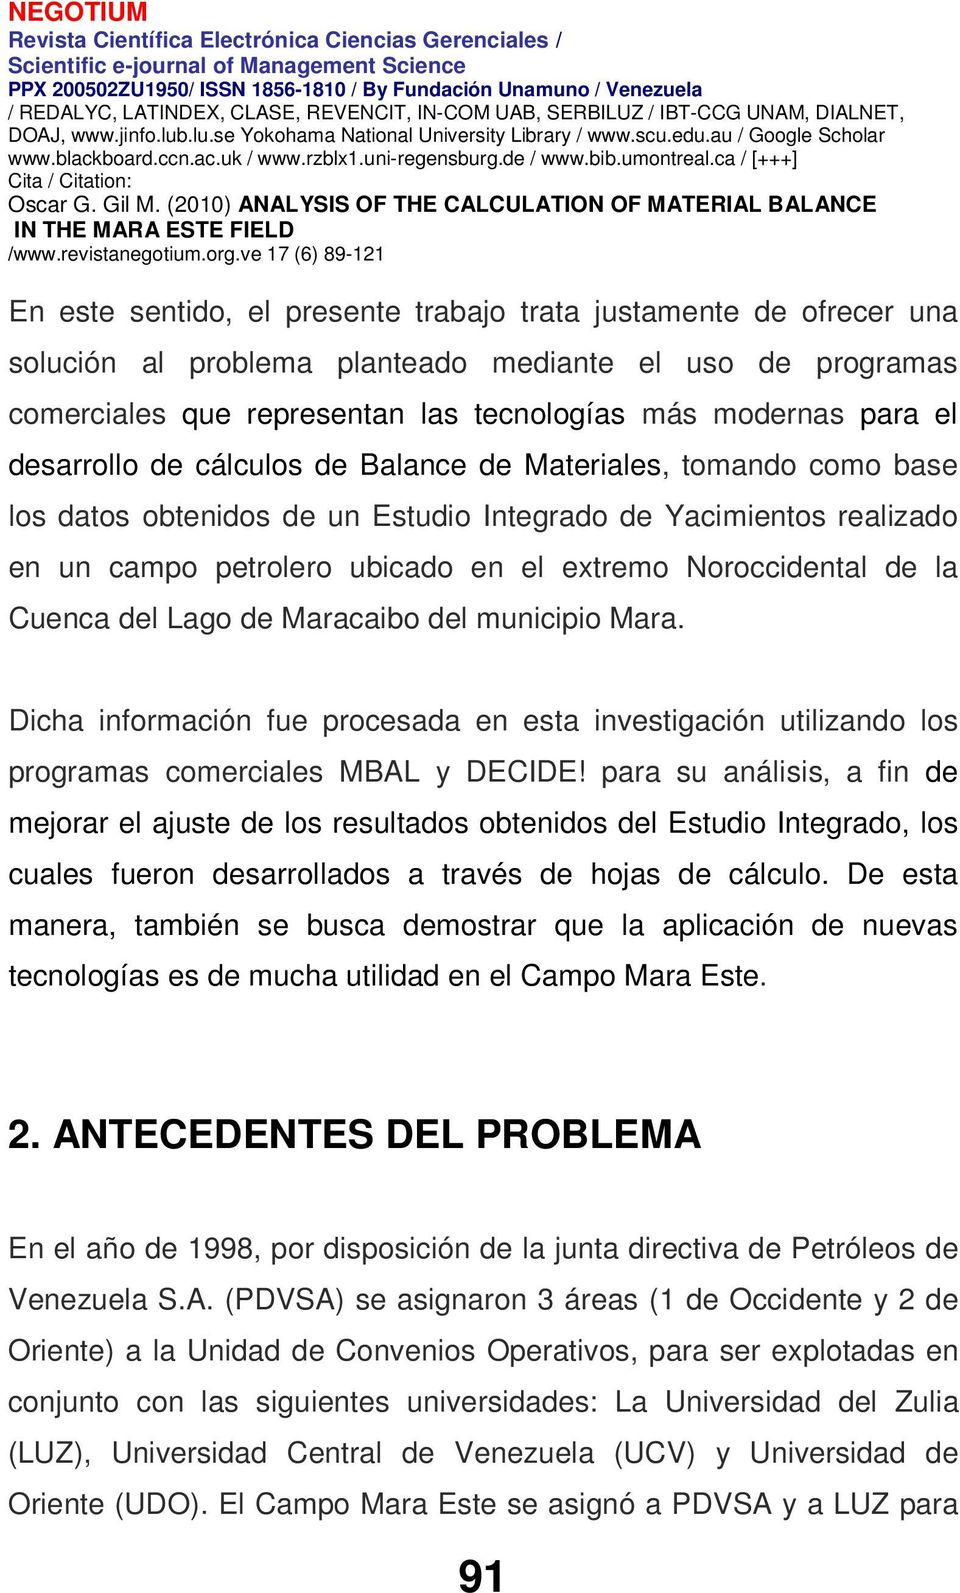 Cuenca del Lago de Maracaibo del municipio Mara. Dicha información fue procesada en esta investigación utilizando los programas comerciales MBAL y DECIDE!